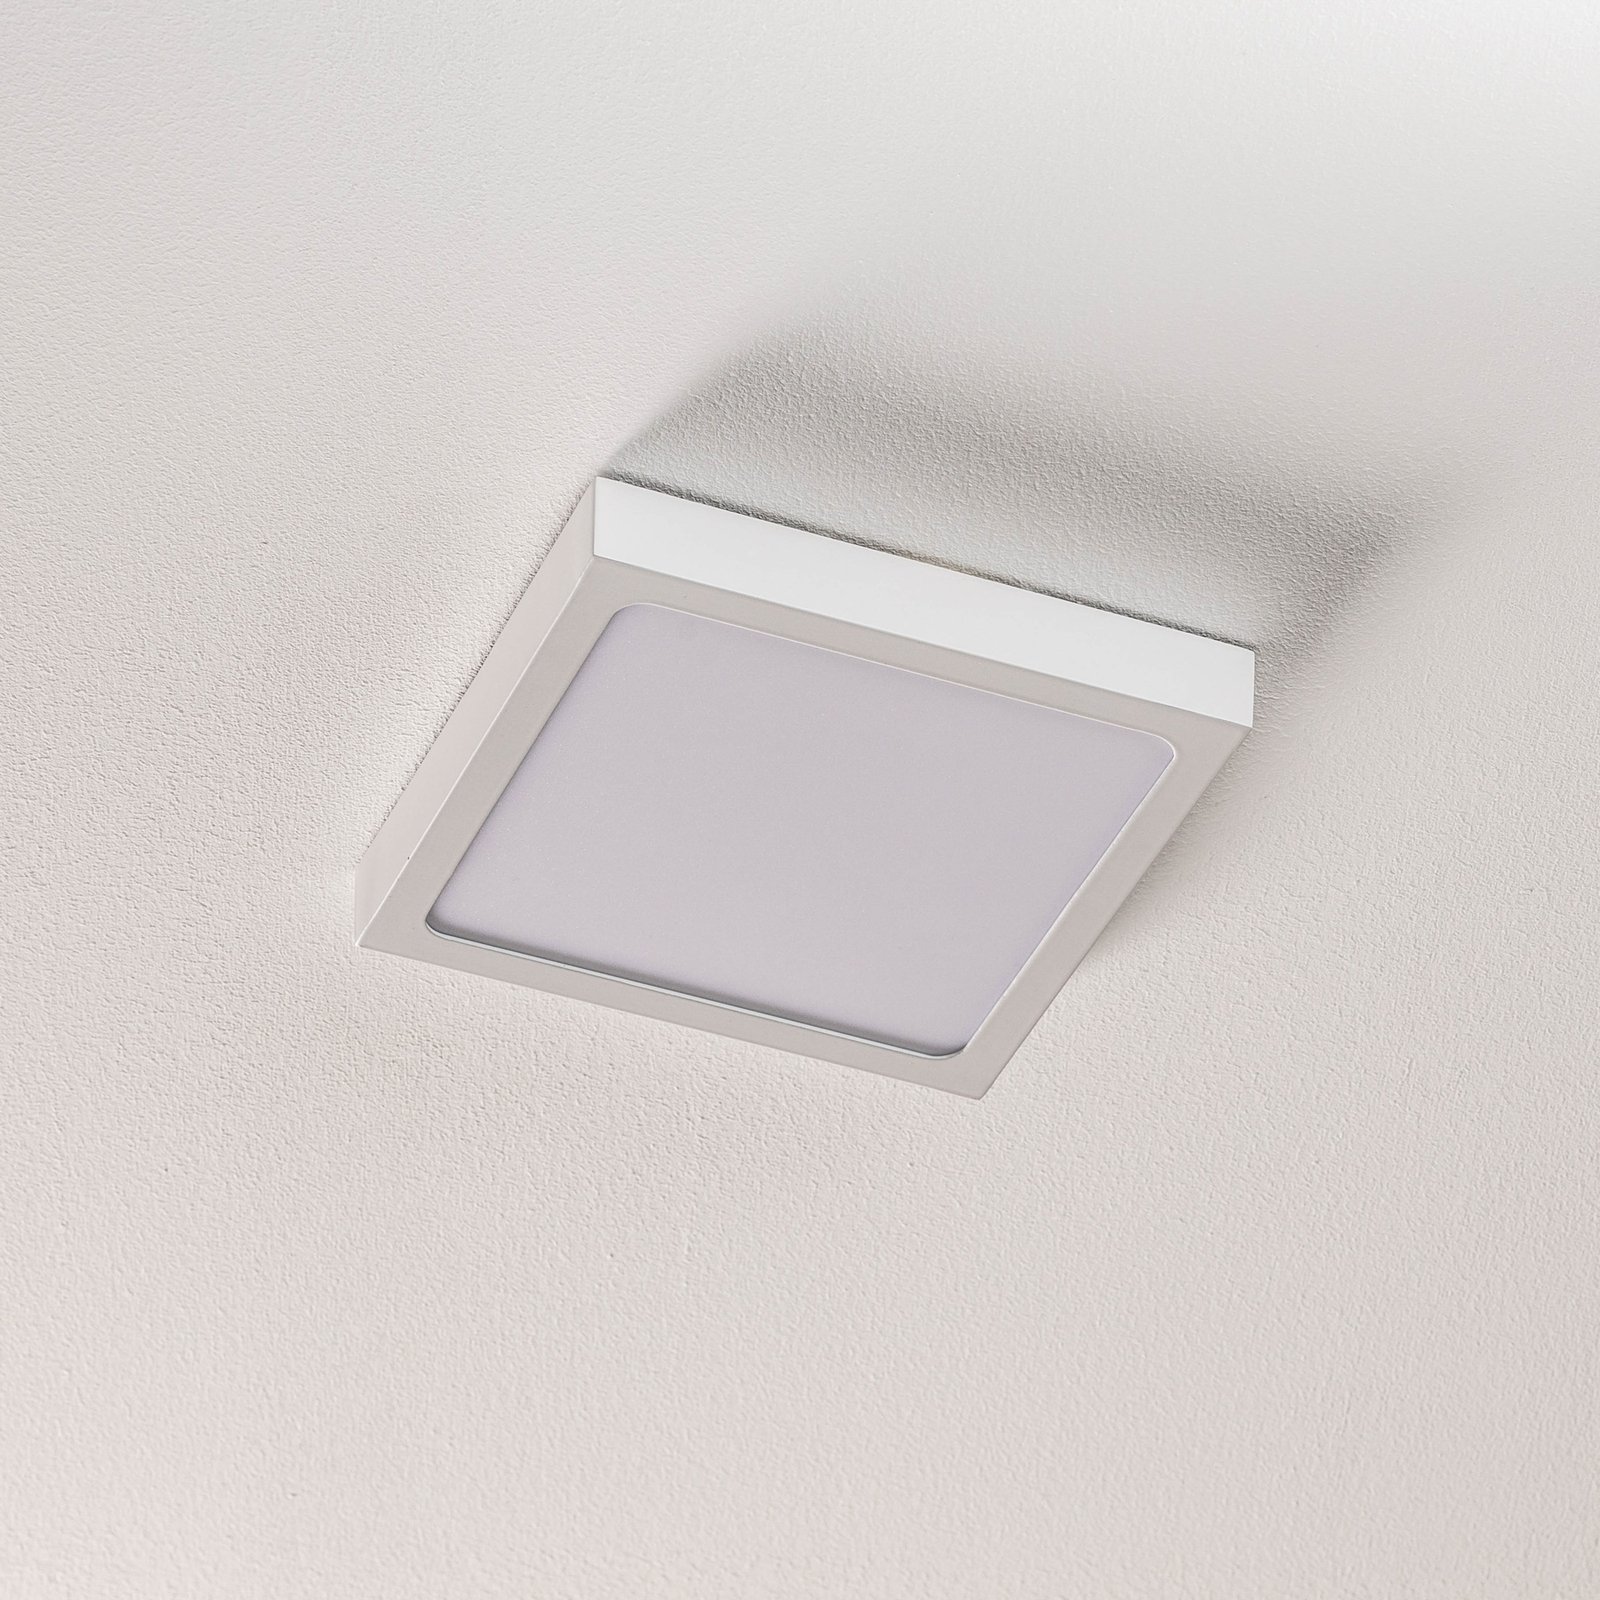 Vika LED wall light, square, white, 18 x 18 cm